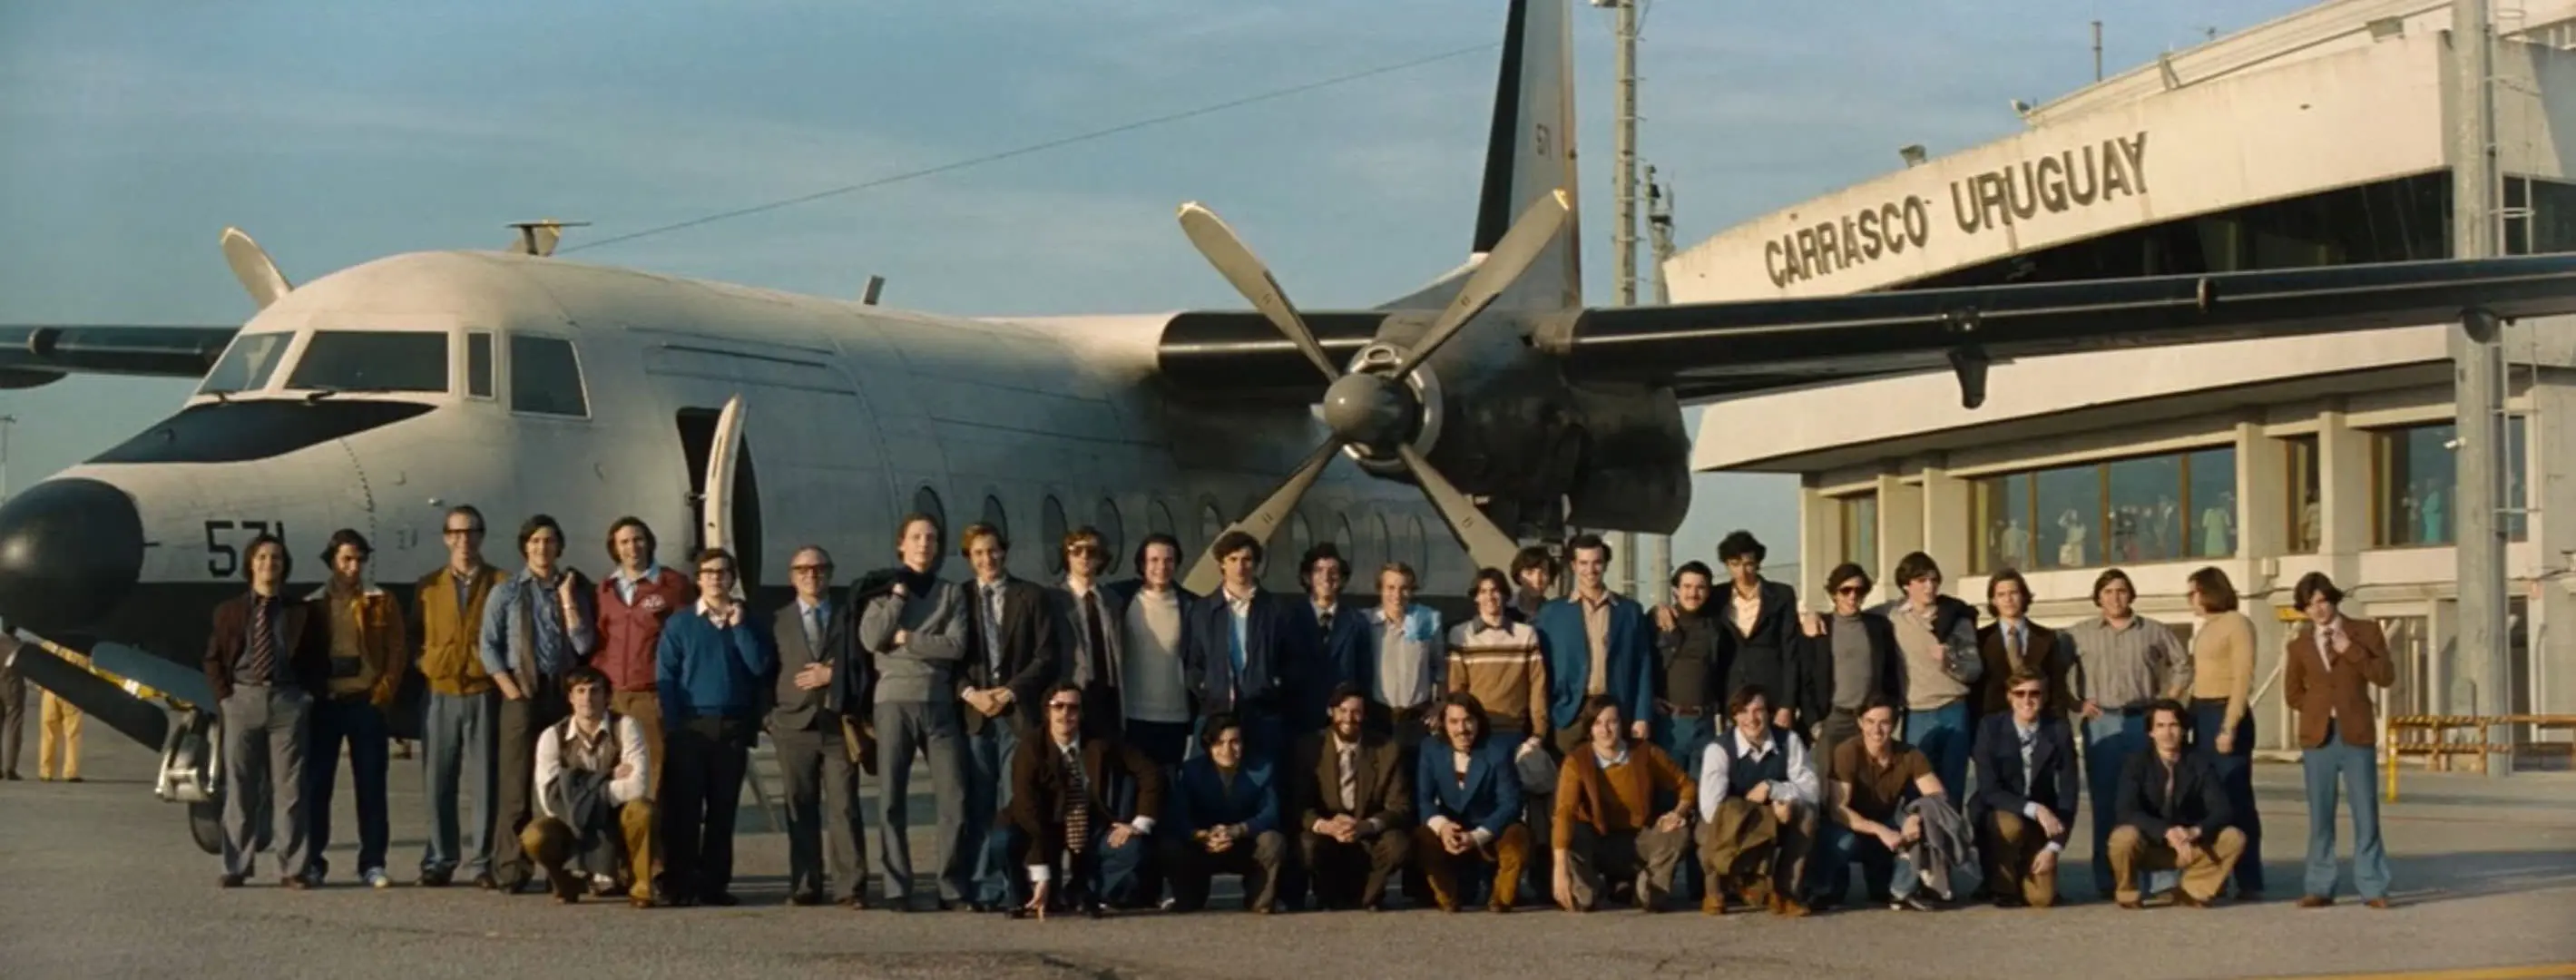   Vol 571 de l'armée de l'air uruguayenne avec des passagers debout devant l'avion à l'aéroport et prenant une photo de groupe commémorative dans une scène du film Snow Society réalisé par Jay Bayona. 